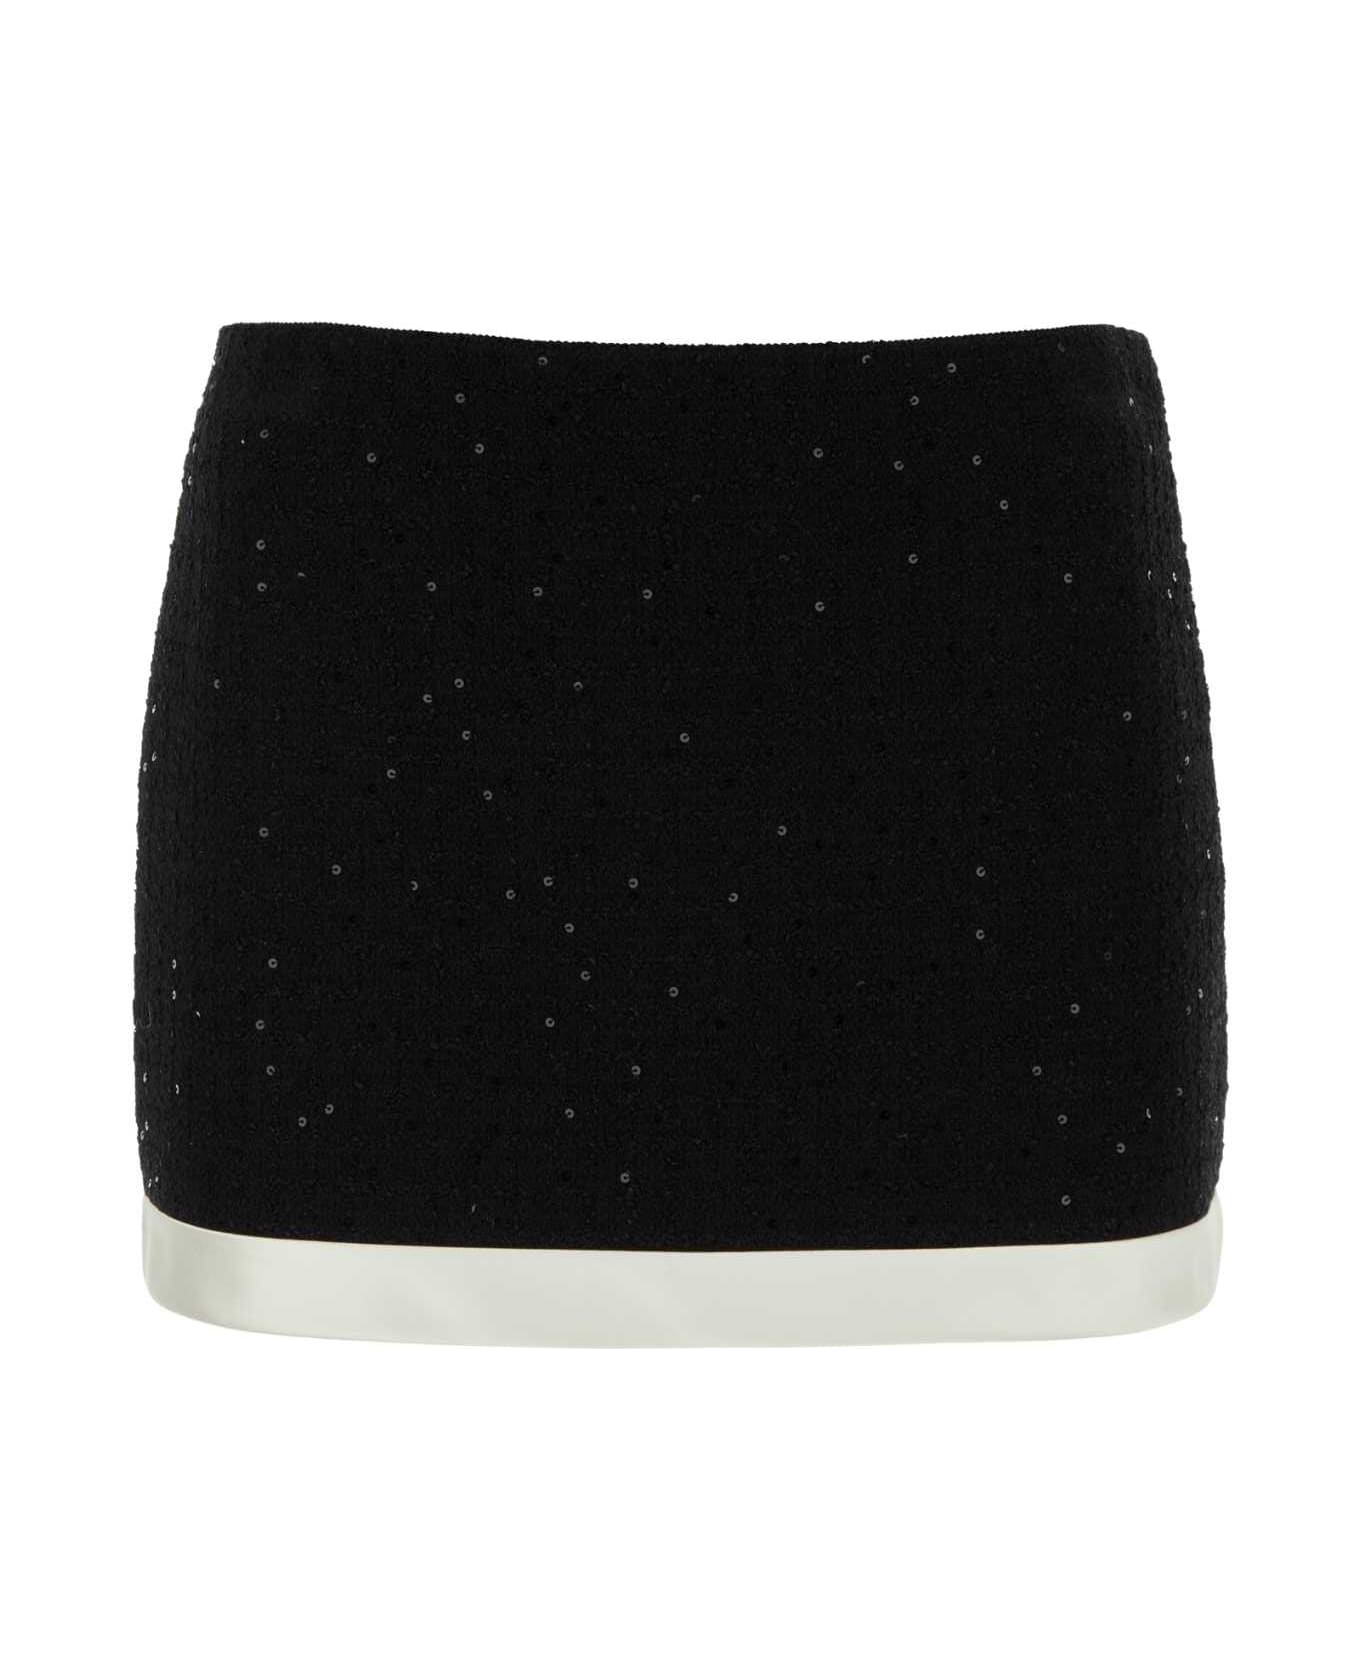 Miu Miu Black Cotton Blend Mini Skirt - NERO スカート